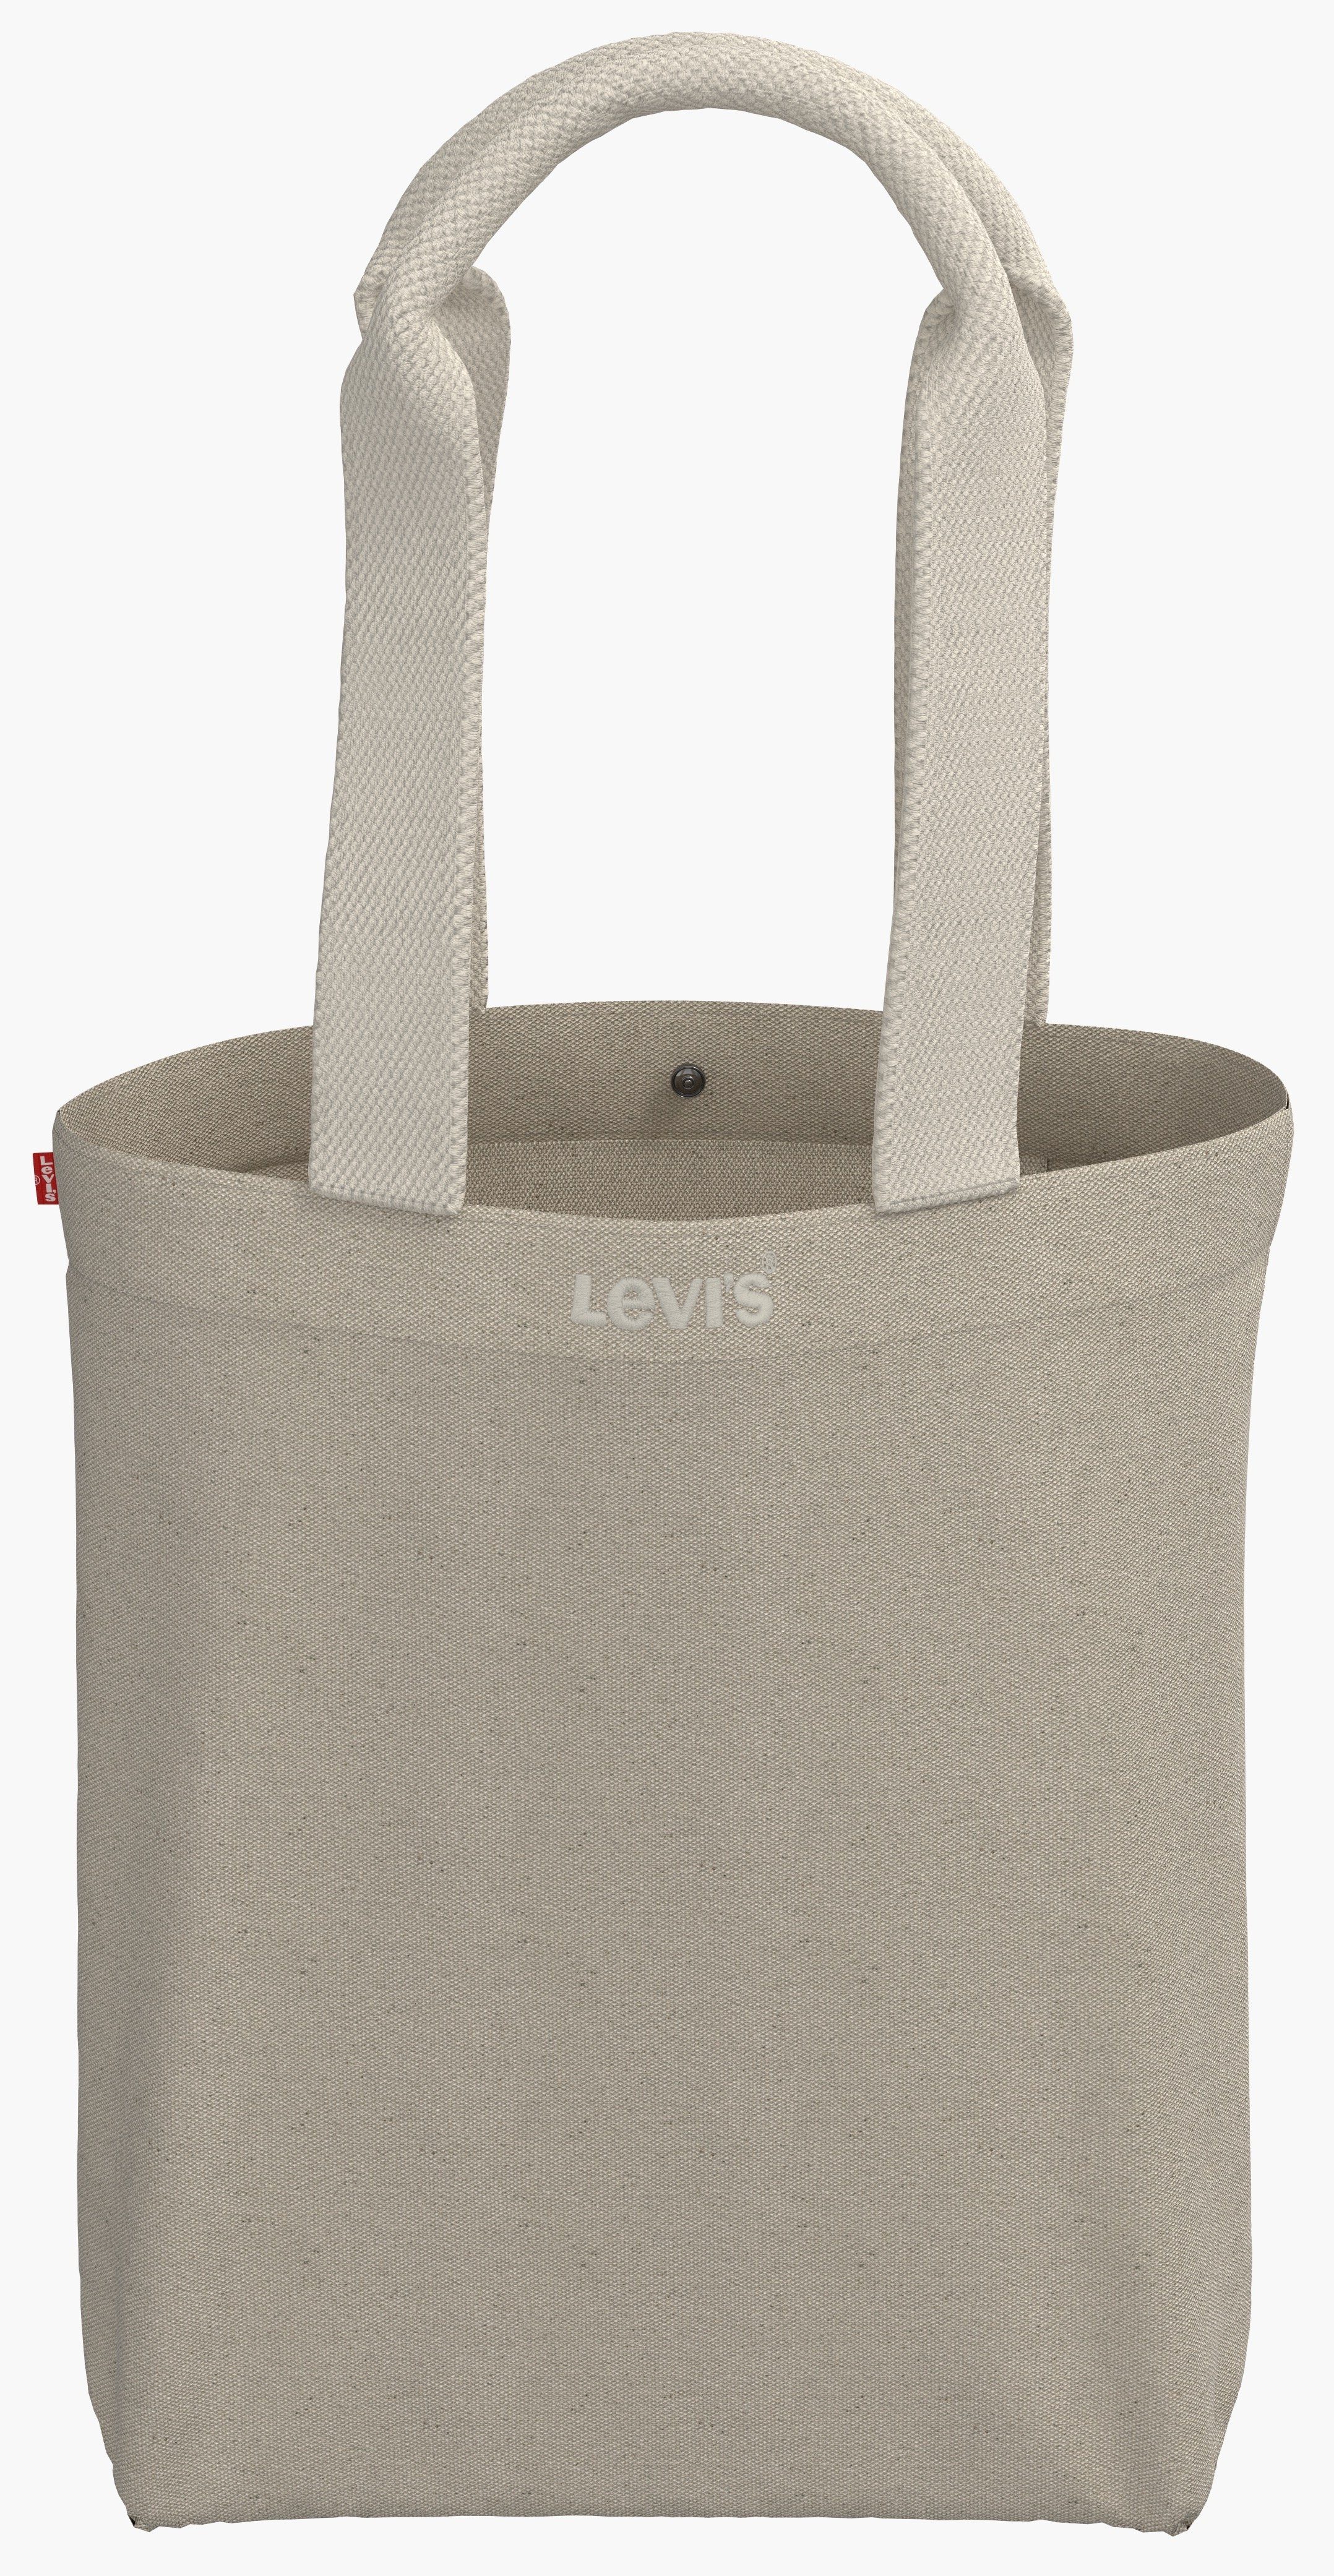 Levi's Shopper ICON TOTE OV